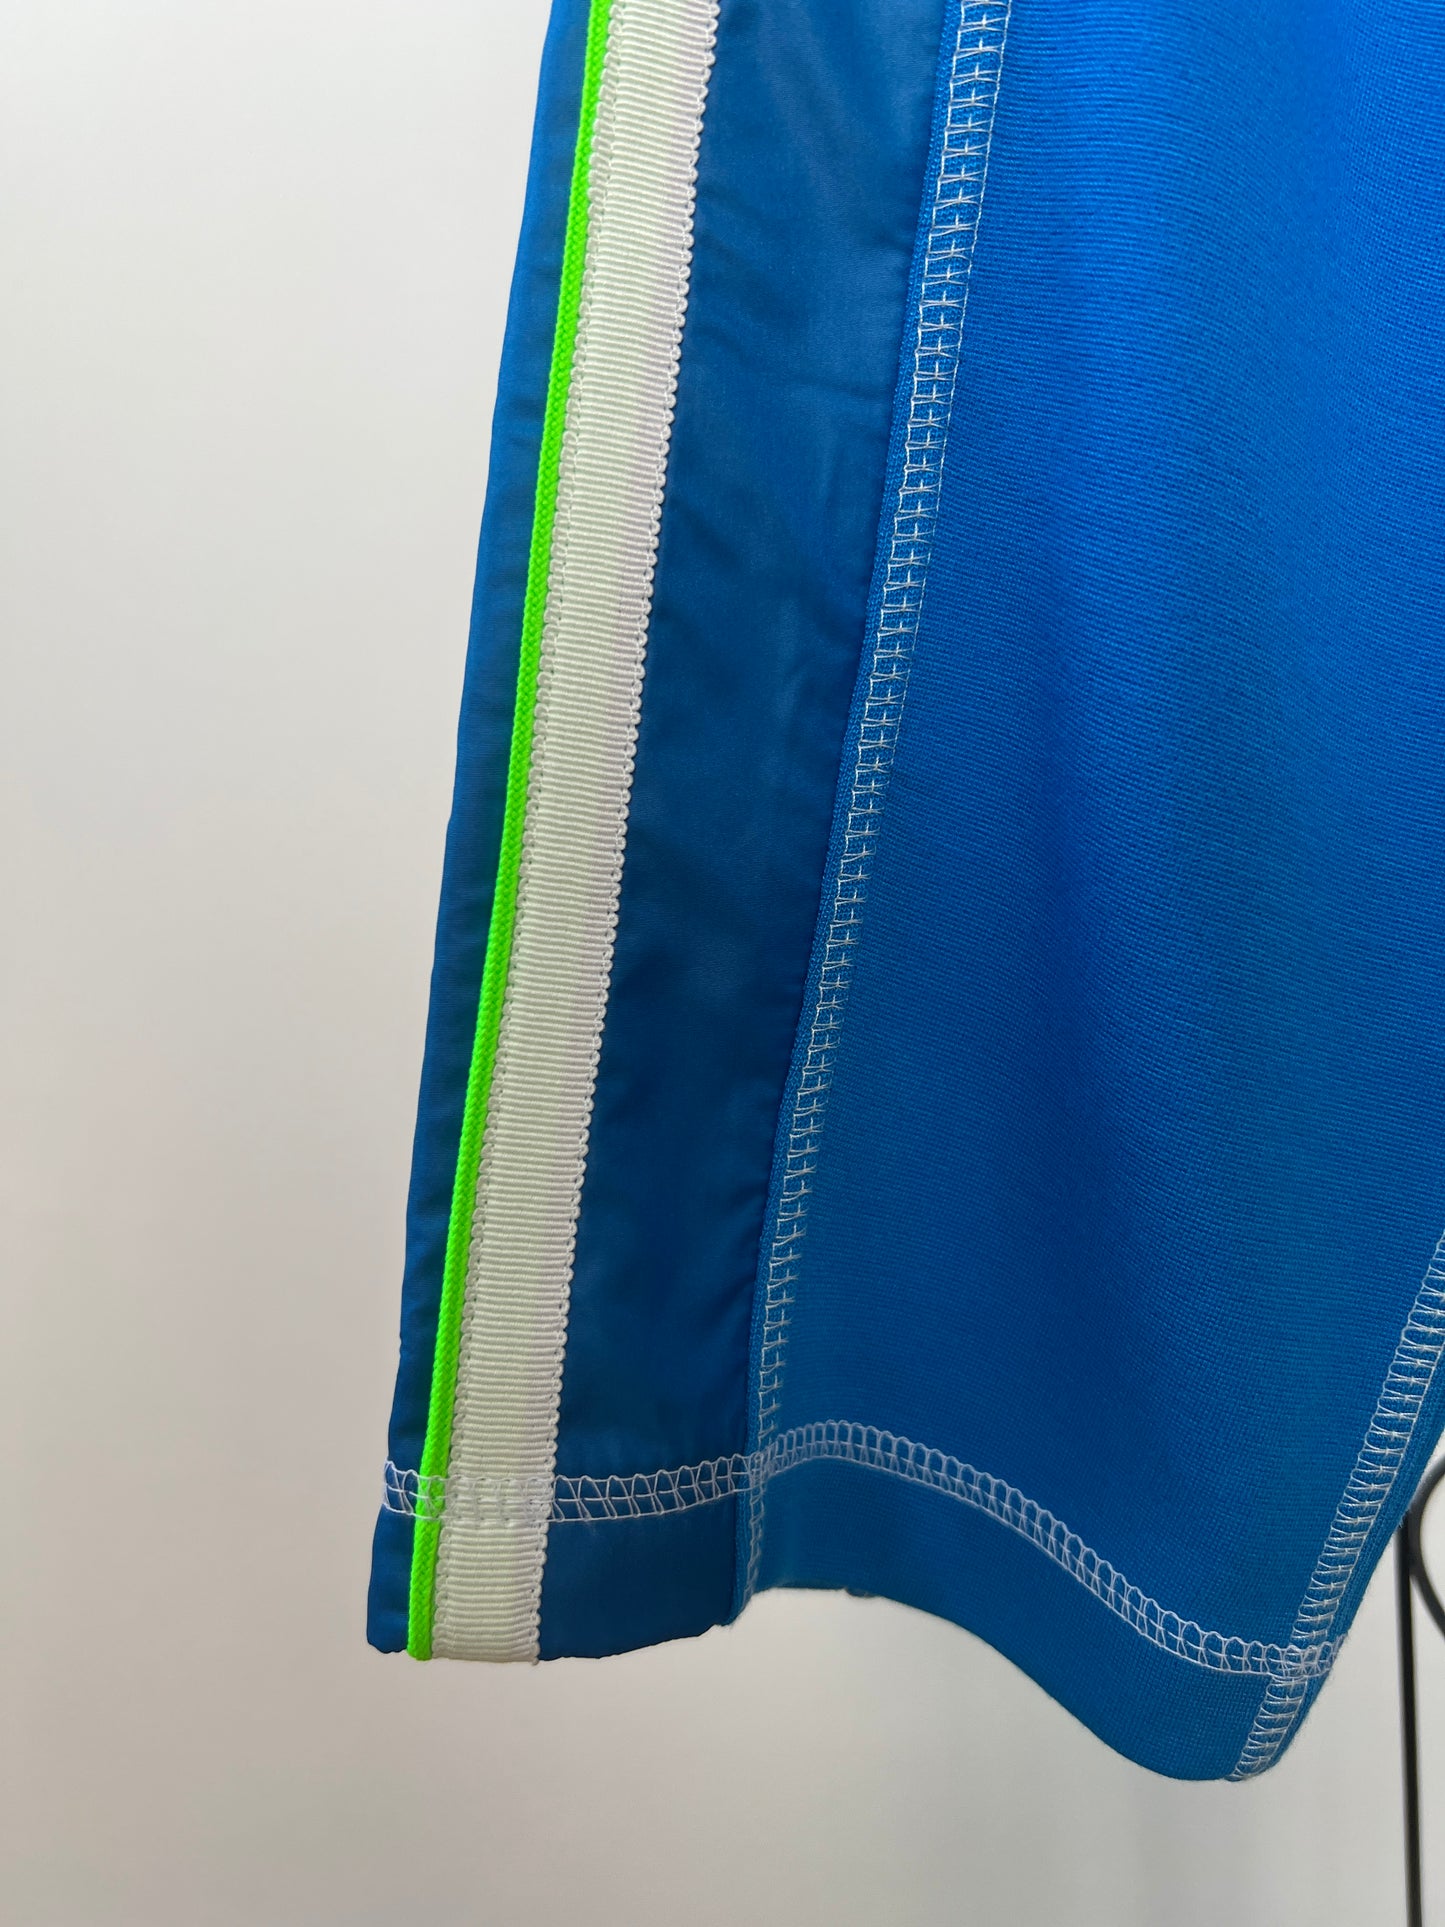 Pantalon jogger bleu vif à galons vert néon et blanc (6 et 8)